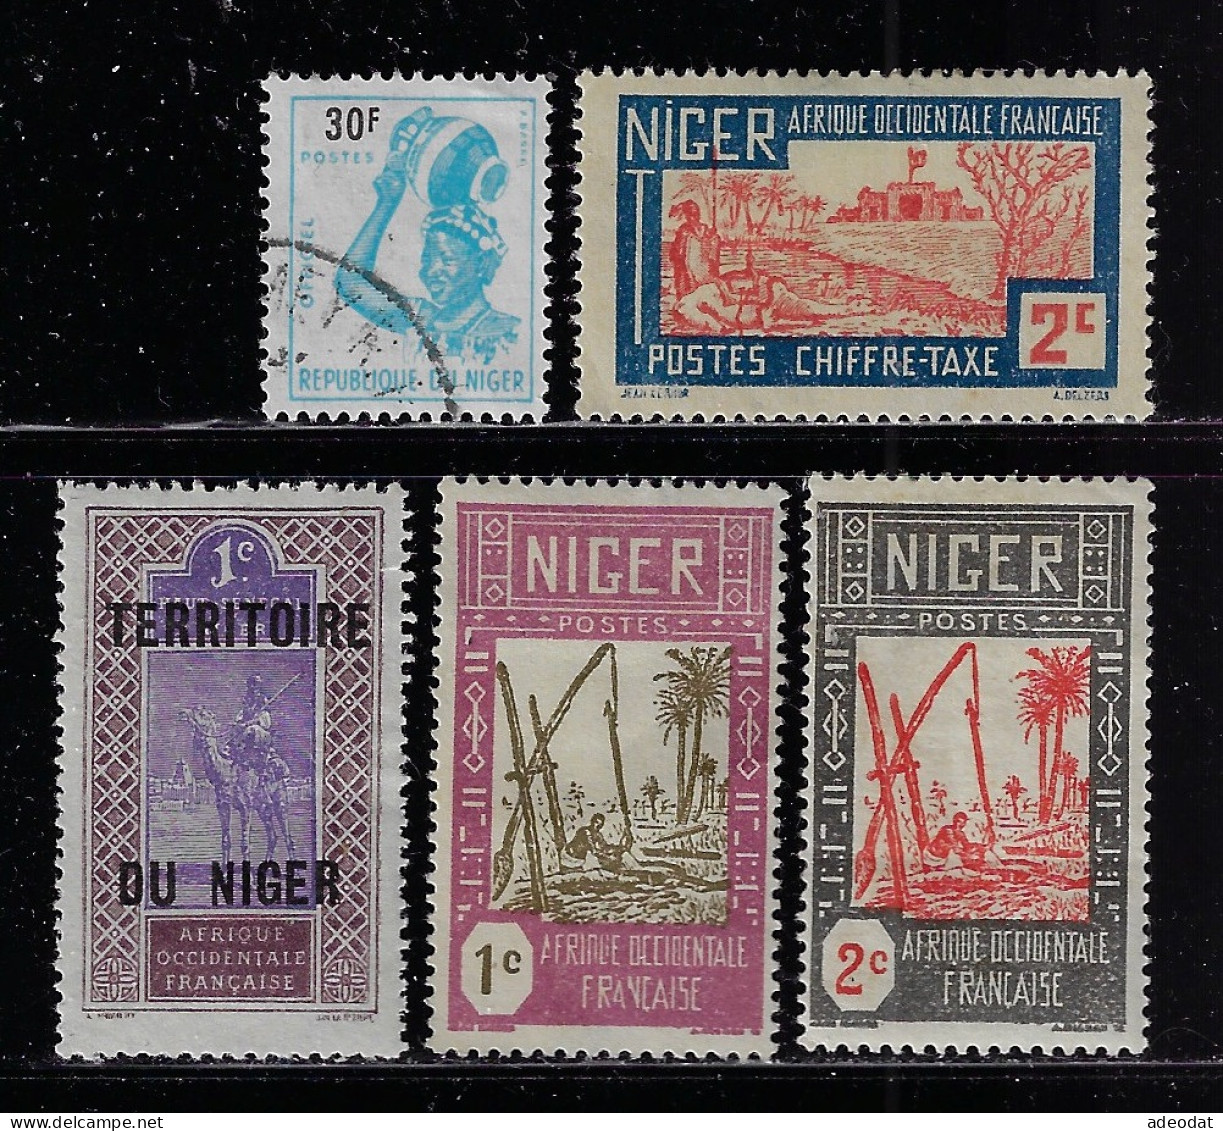 NIGER  1921,1926  SCOTT #1,29,30,J9   MH - Neufs